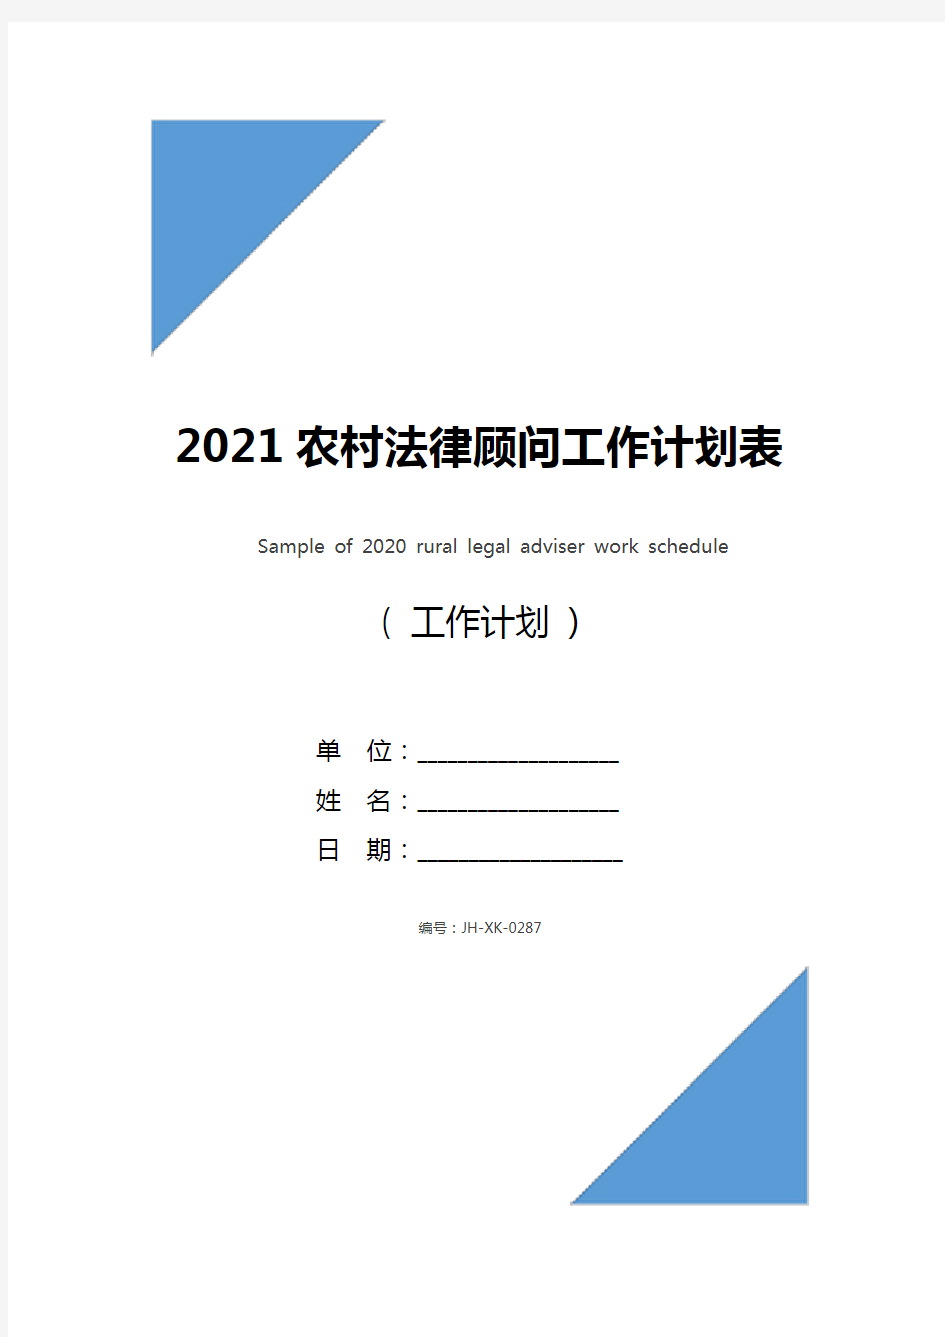 2021农村法律顾问工作计划表样本(通用版)